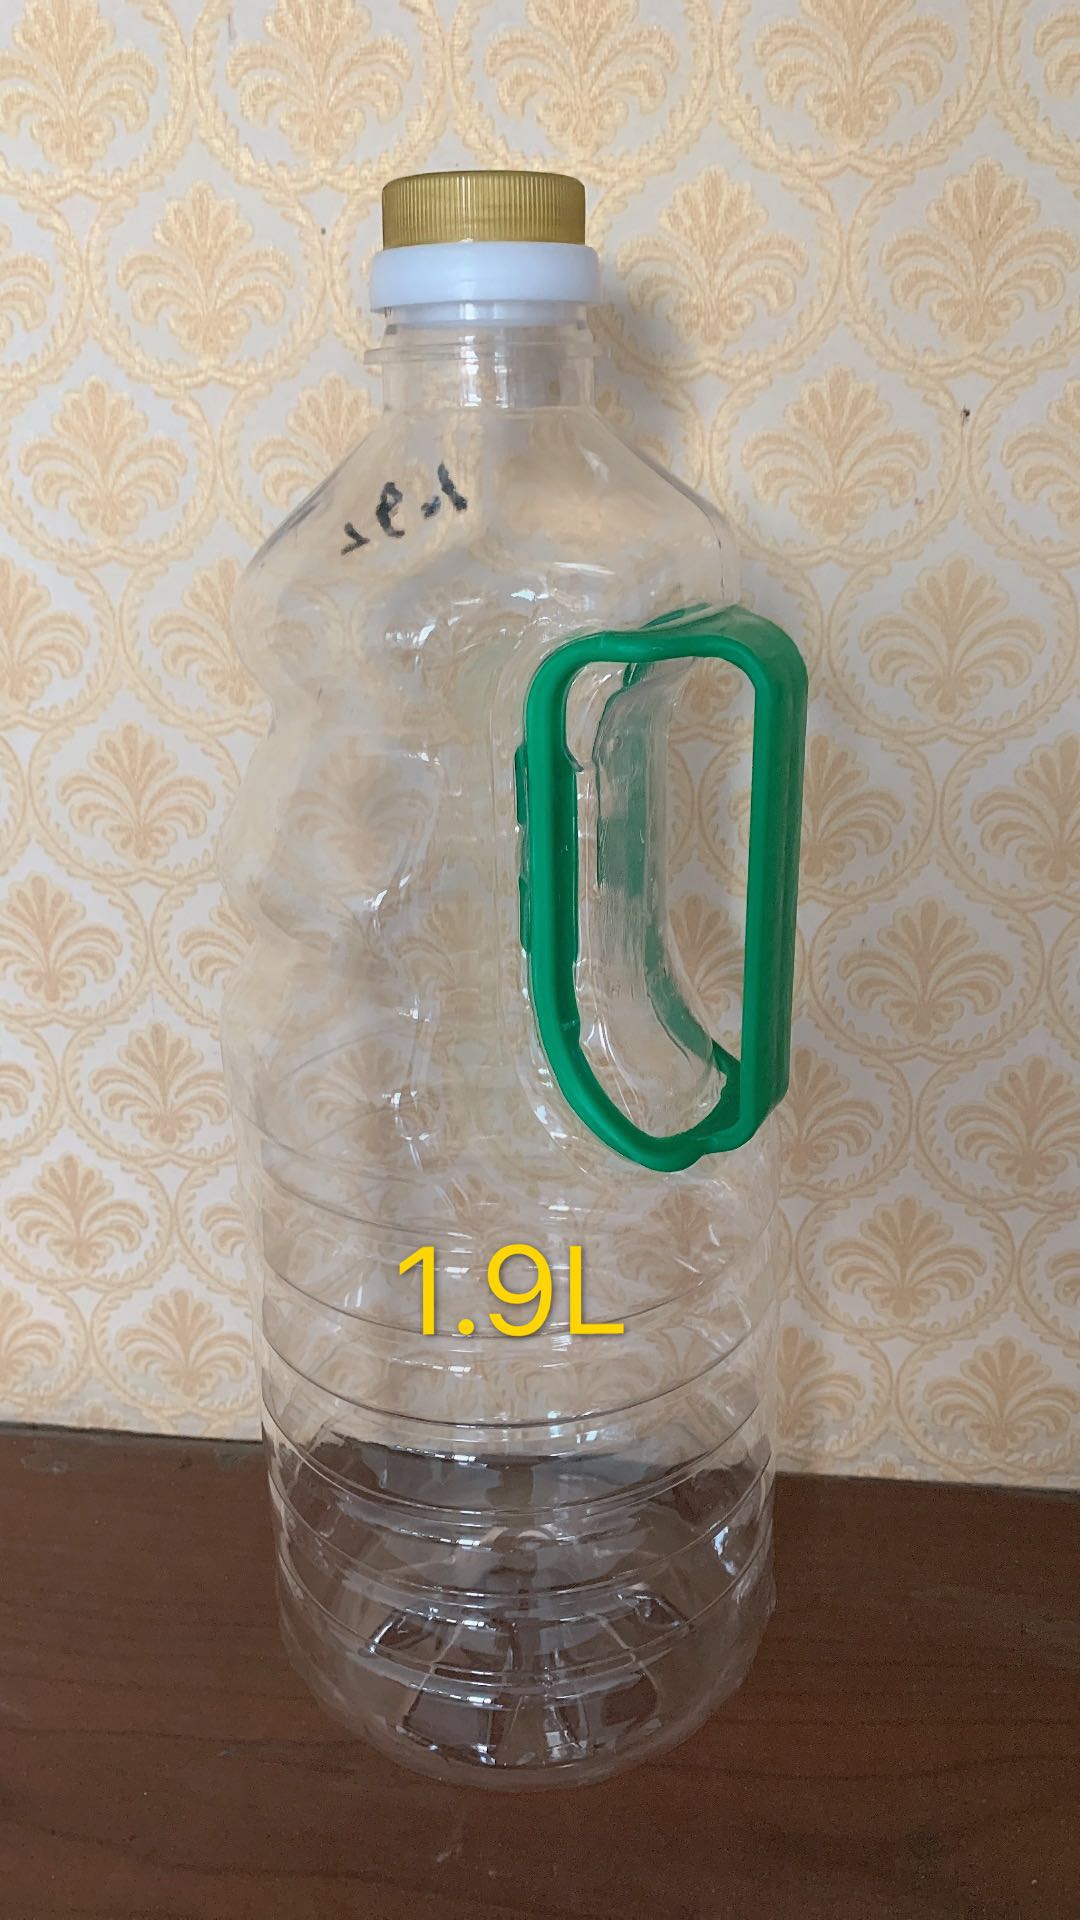 汇德塑料 消毒液瓶 饮料瓶 塑料瓶、壶 专业生产销售塑料瓶4